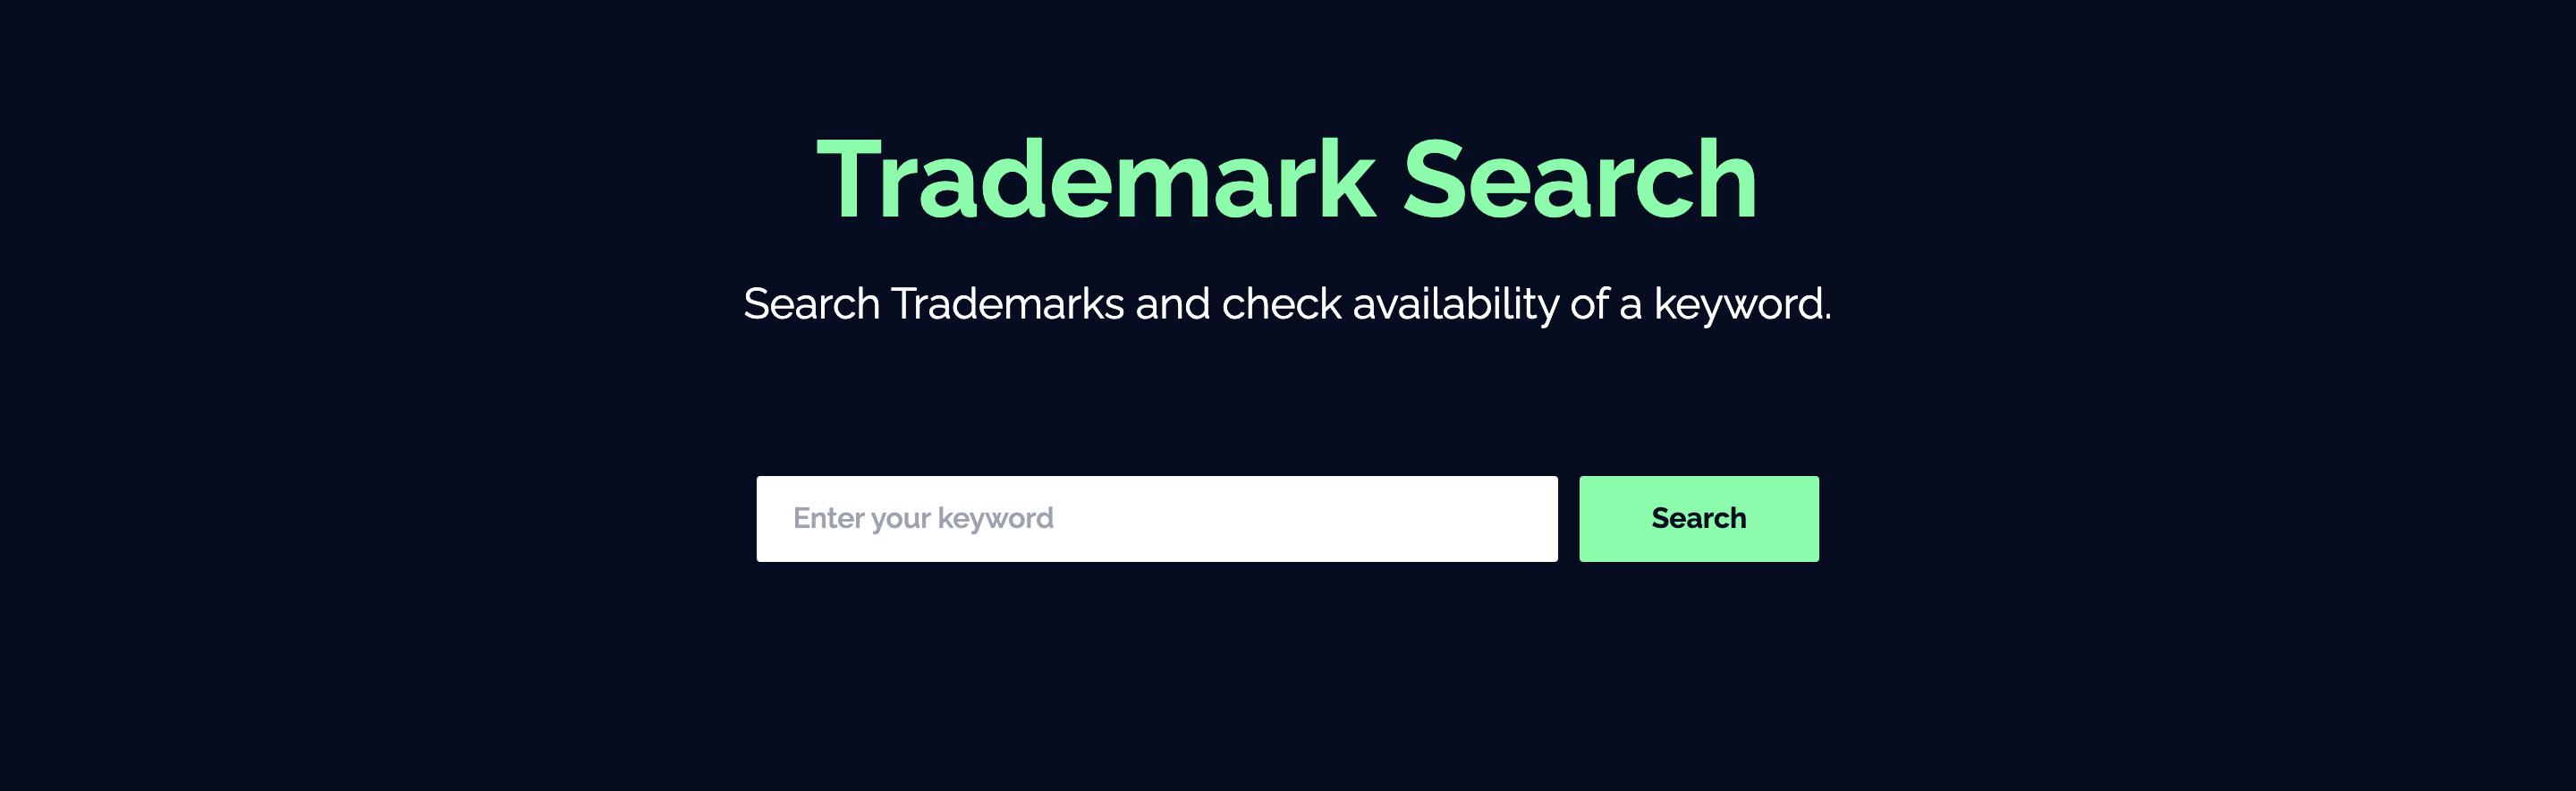 Initial UI of Trademark App